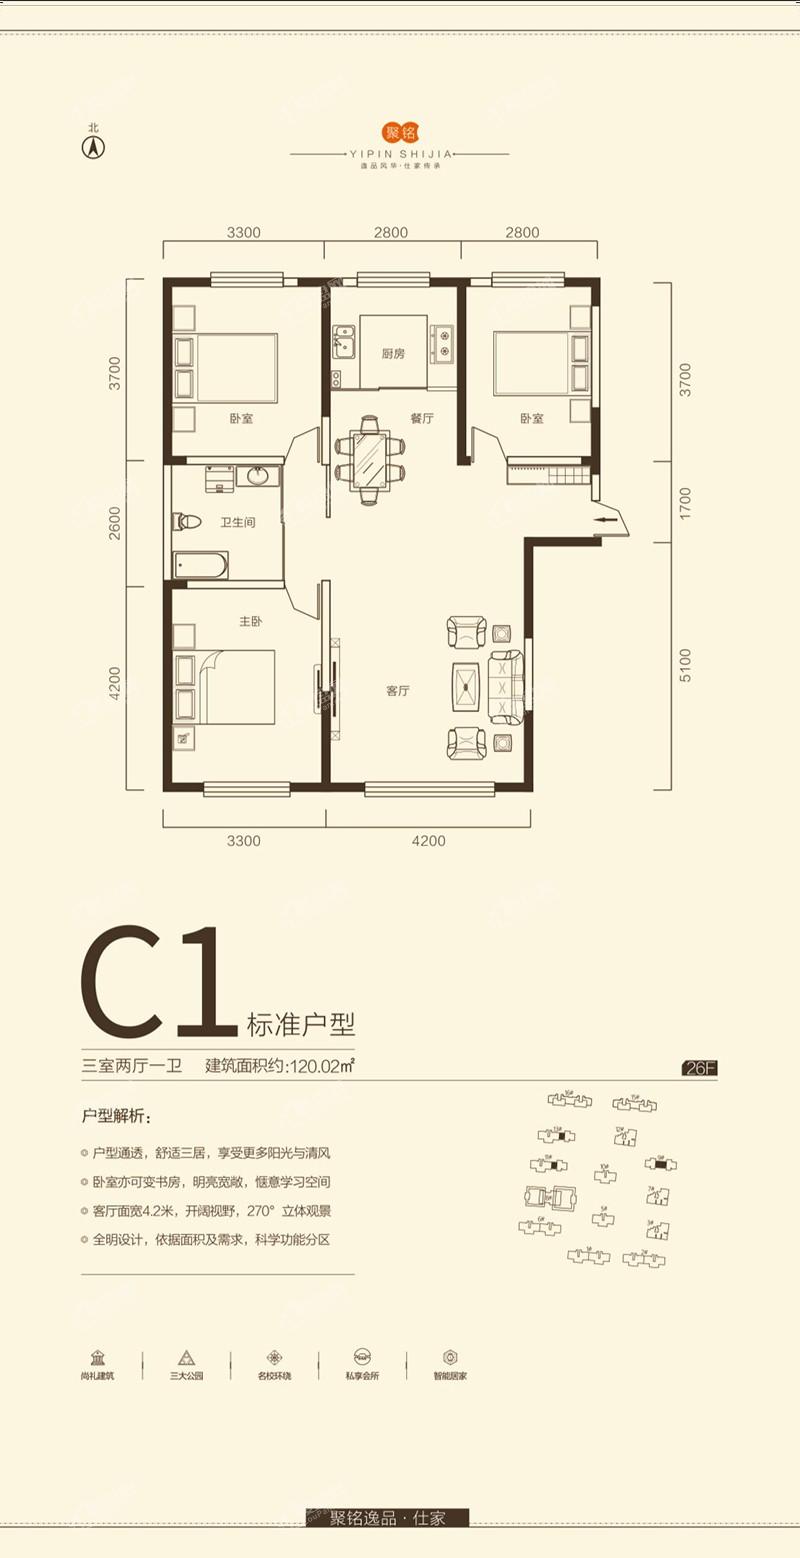 C1户型-三室两厅一卫-120.02平米